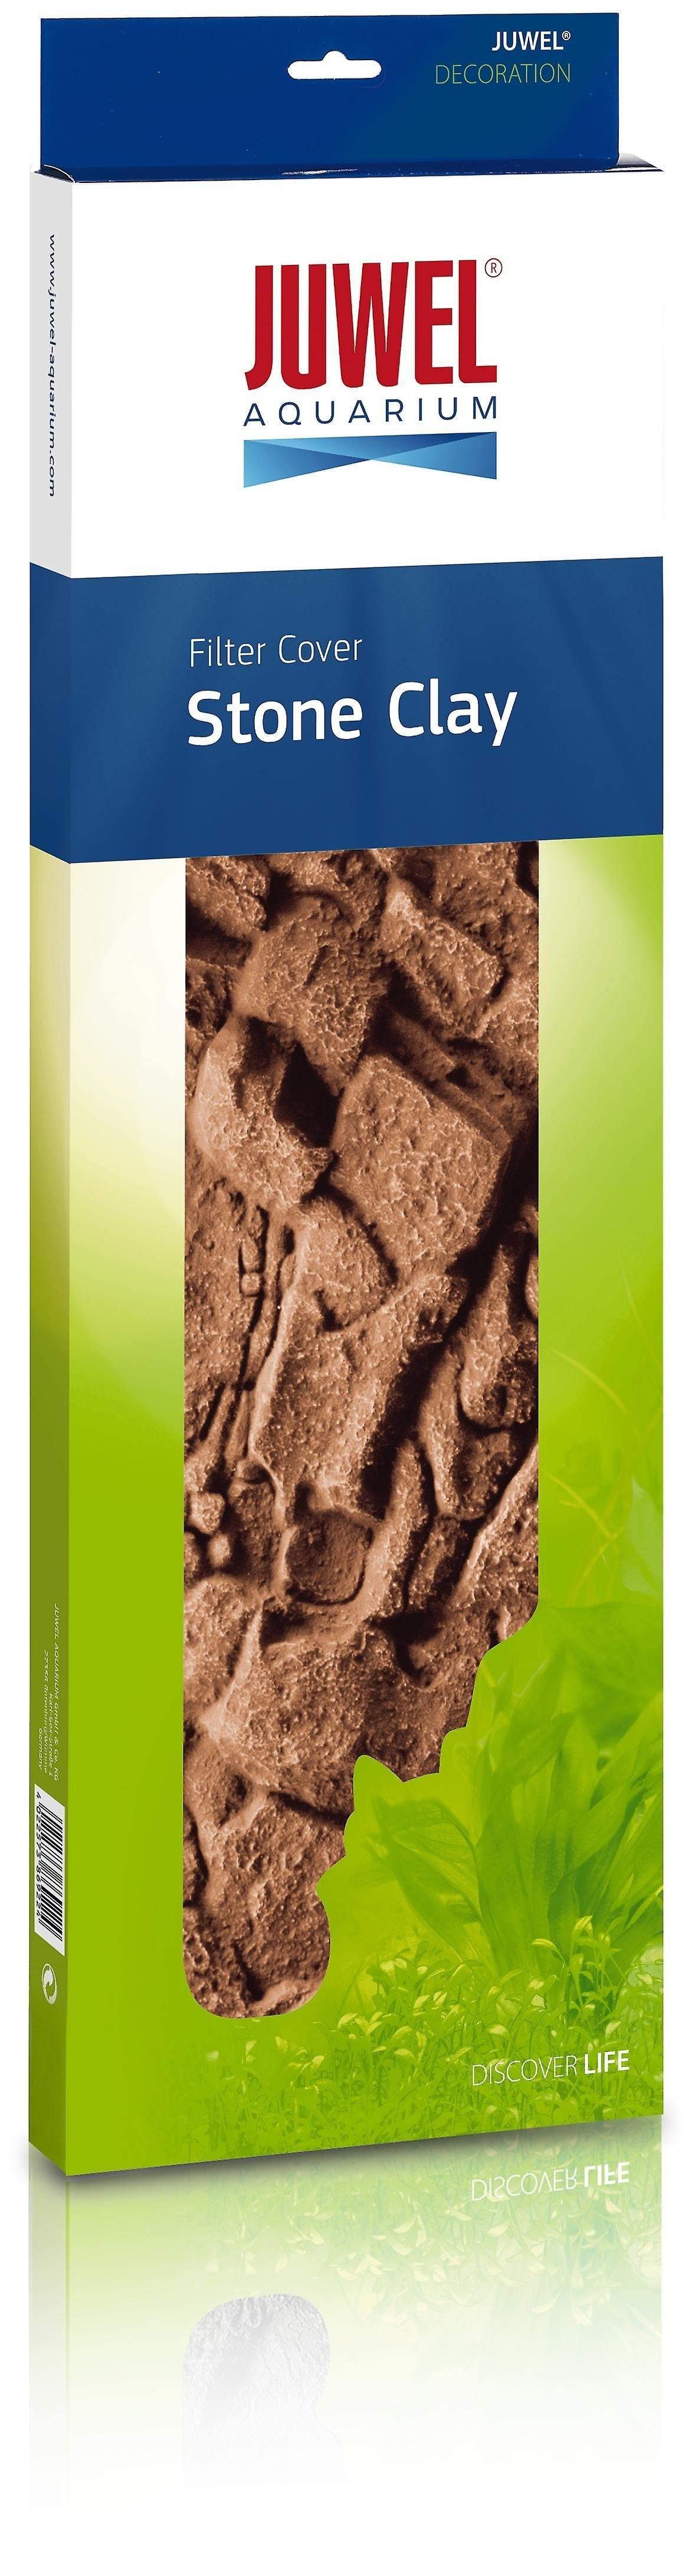 Juwel Stone Clay Filter Cover - Amazing Amazon